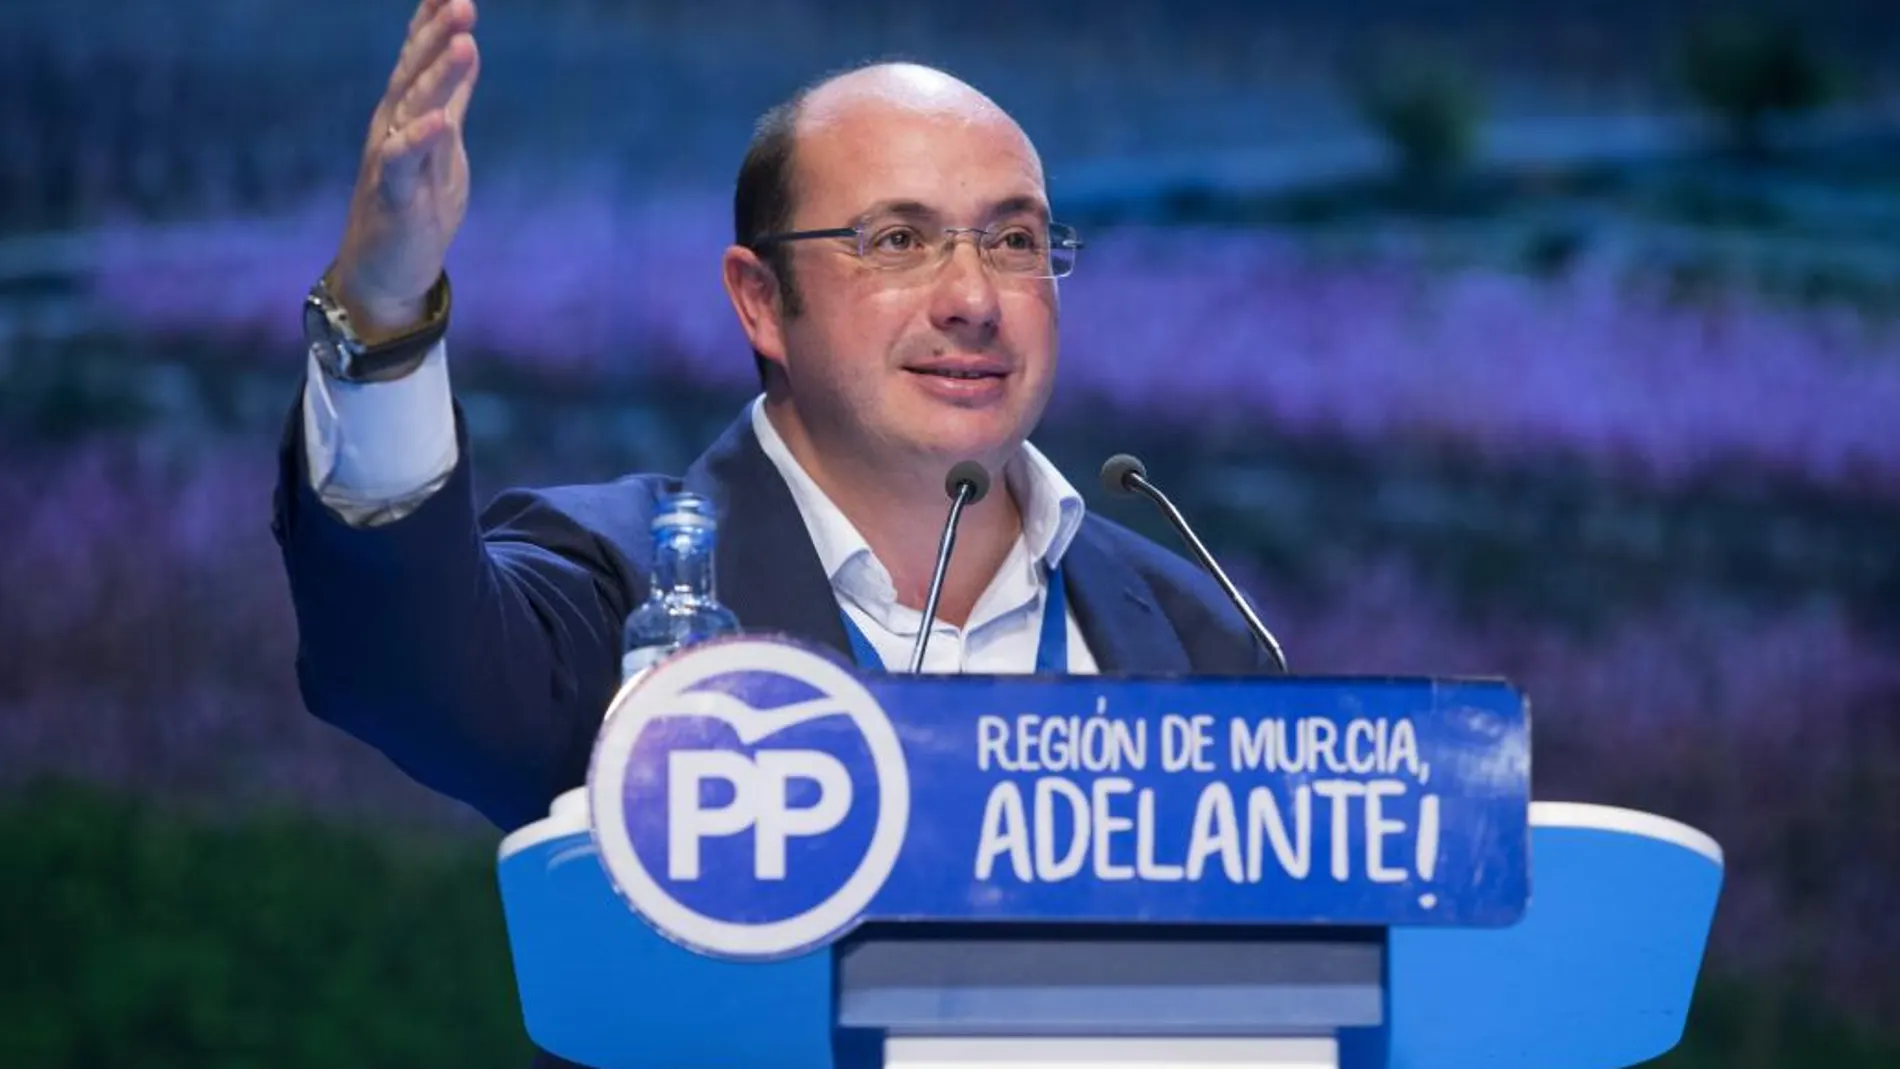 El presidente de la Región de Murcia Pedro Antonio Sánchez